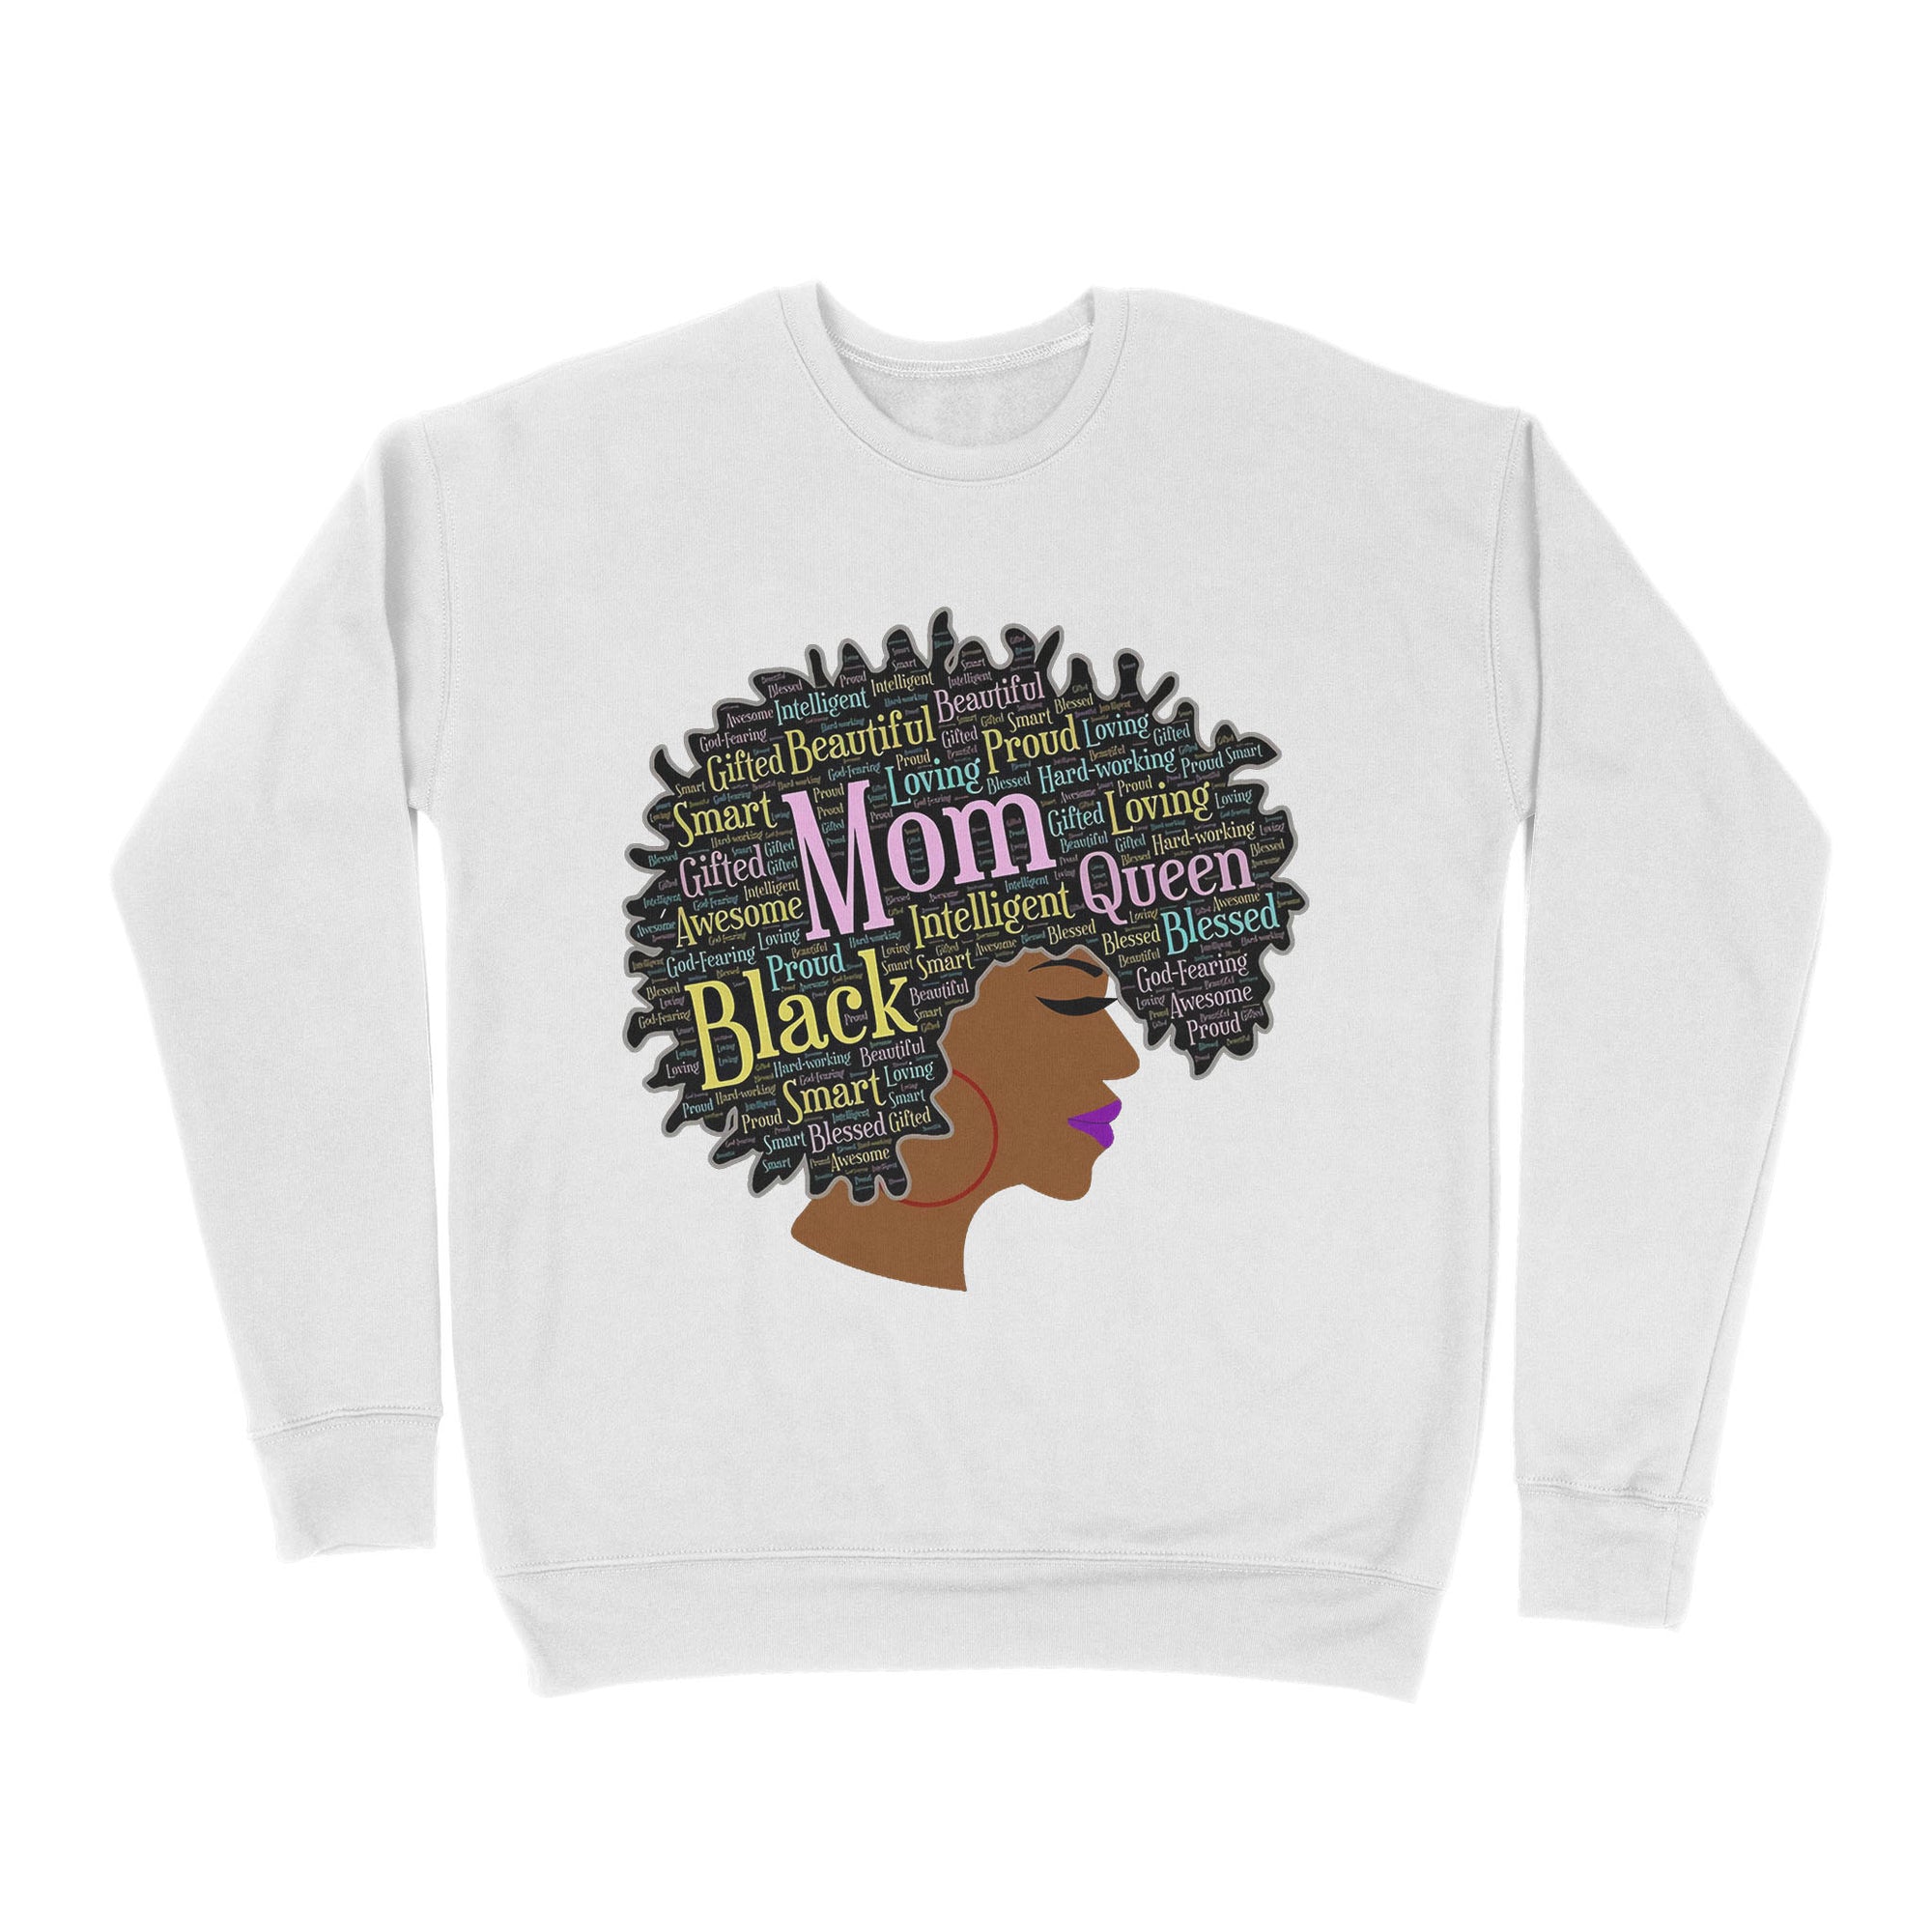 Premium Crew Neck Sweatshirt - Happy Mother’s Day Black Mom Queen Afro African Woman